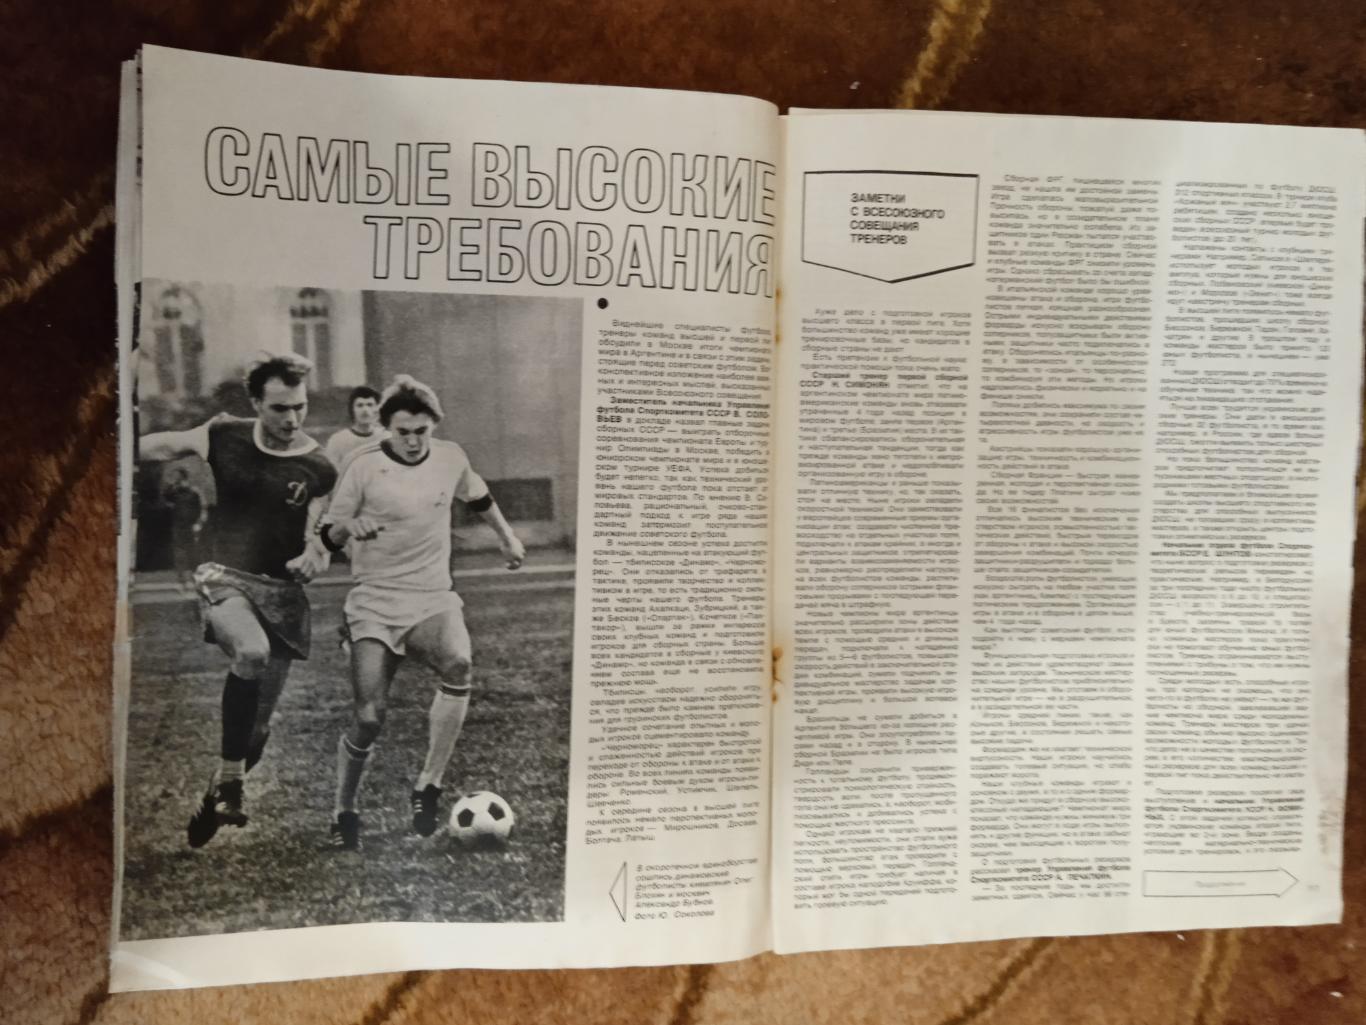 Журнал.Спортивные игры № 11 1978 г.Футбол,хоккей,волейбол,регби.ЧМ 78 Аргентина. 2